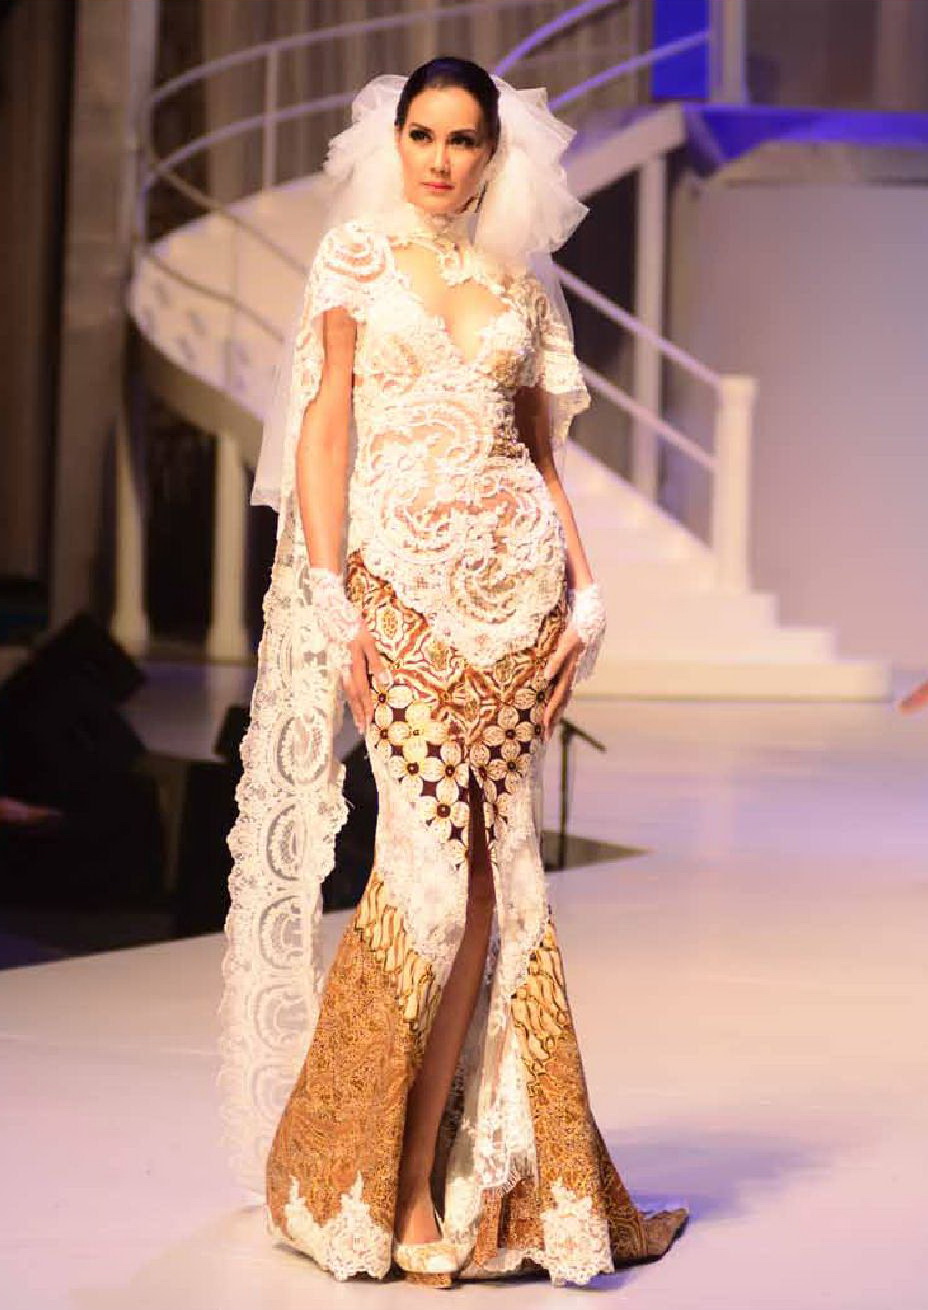 Model Kebaya Anne Avantie Terbaru 2014  www.imgkid.com 